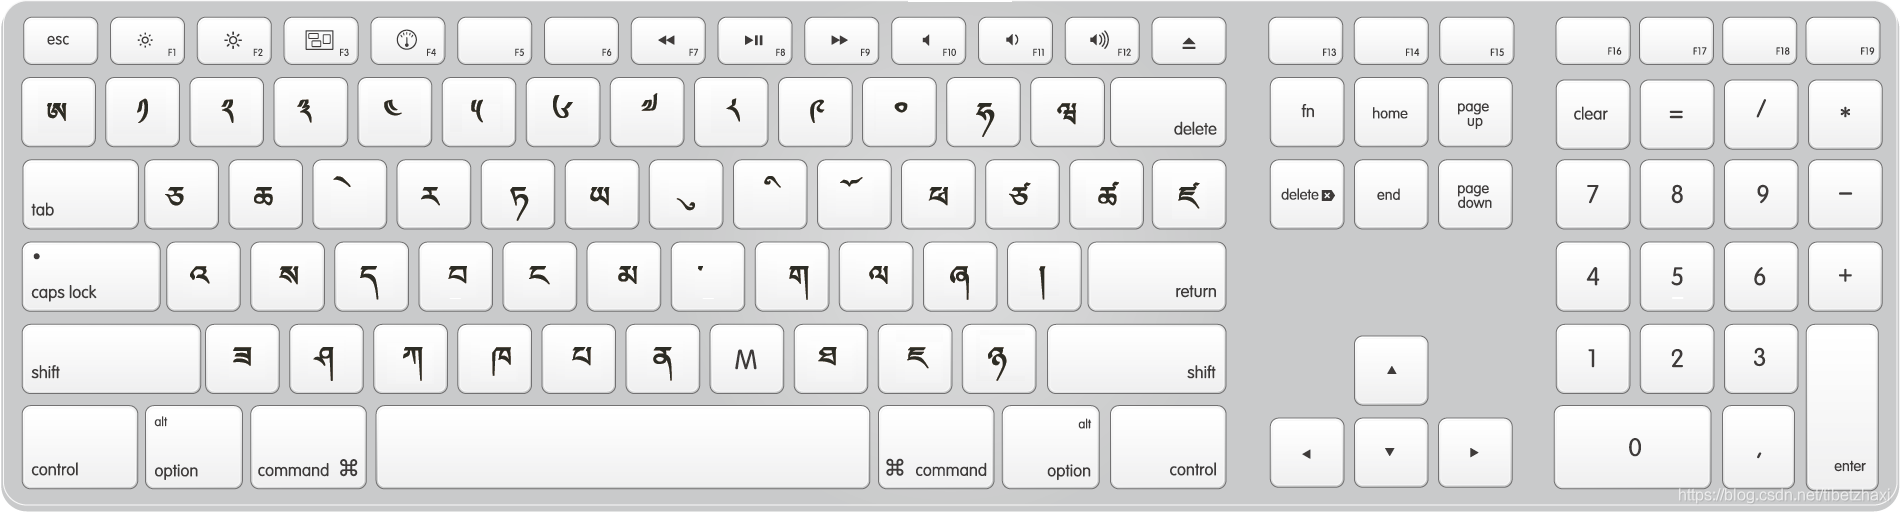 藏文打字键盘图片